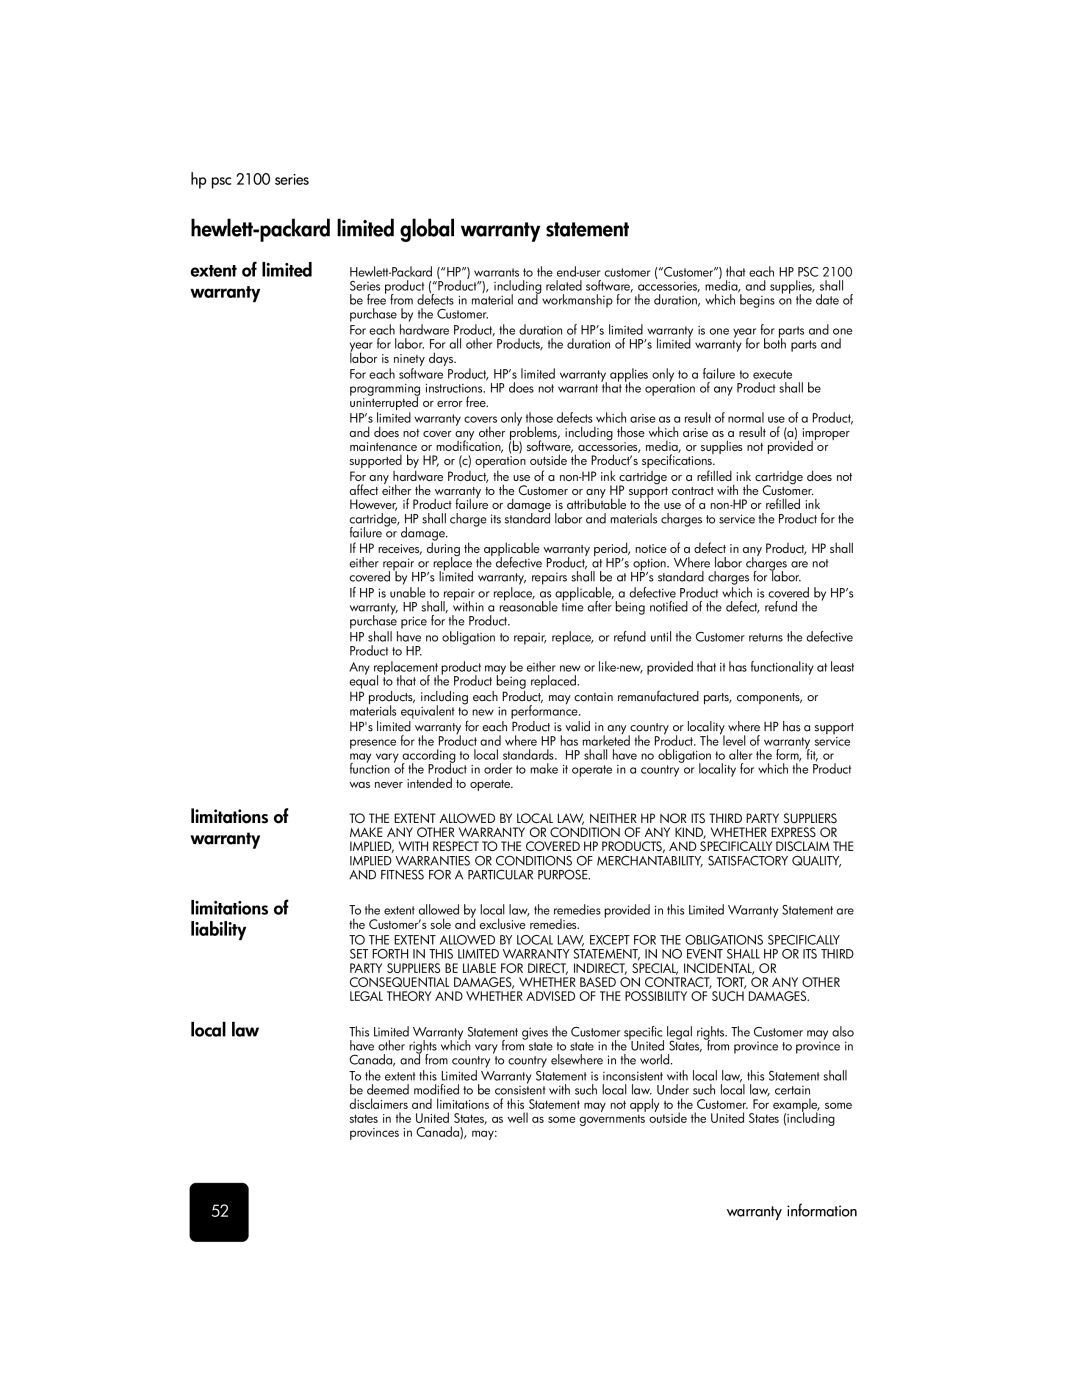 HP 2100 manual Hewlett-packard limited global warranty statement 